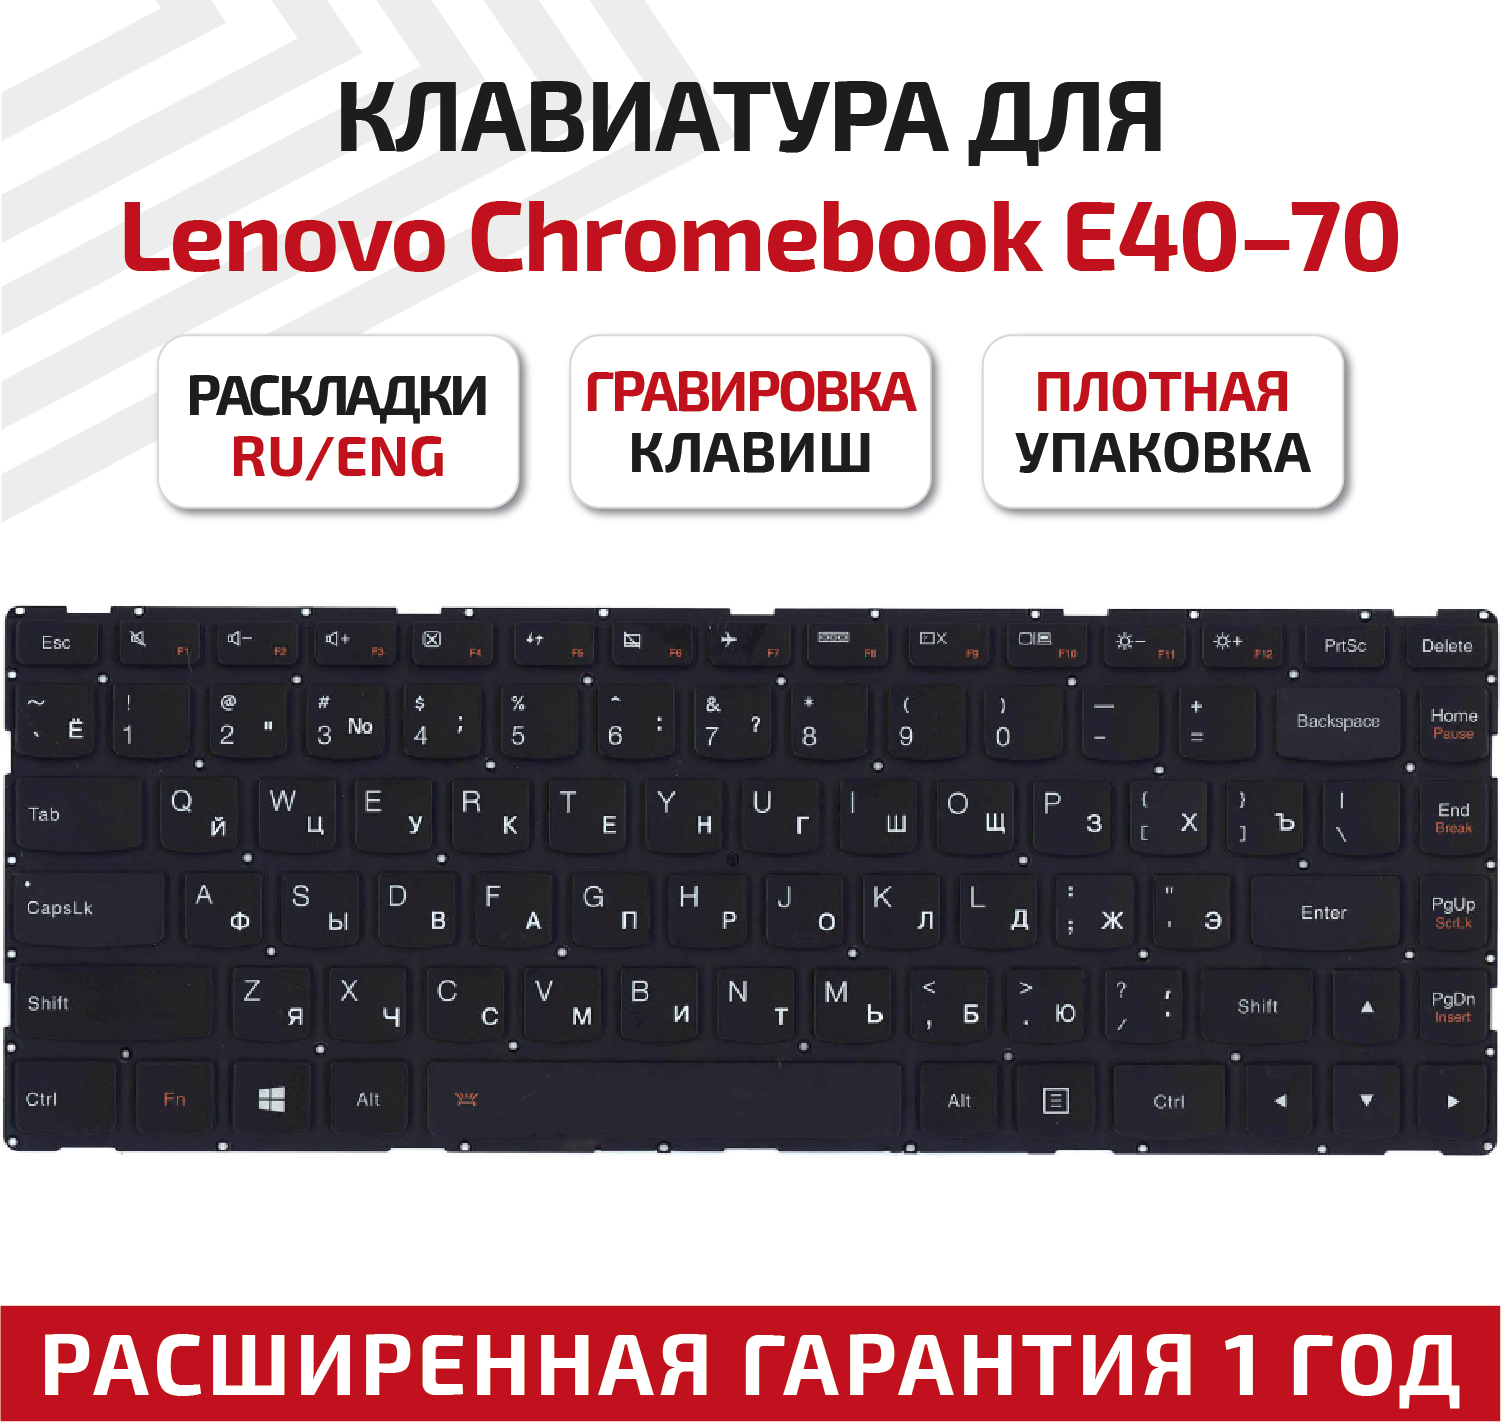 Клавиатура (keyboard) для ноутбука Lenovo E40-70, E40-30, E40-45, E40-80, E40-81, E41-70, E41-80, черная